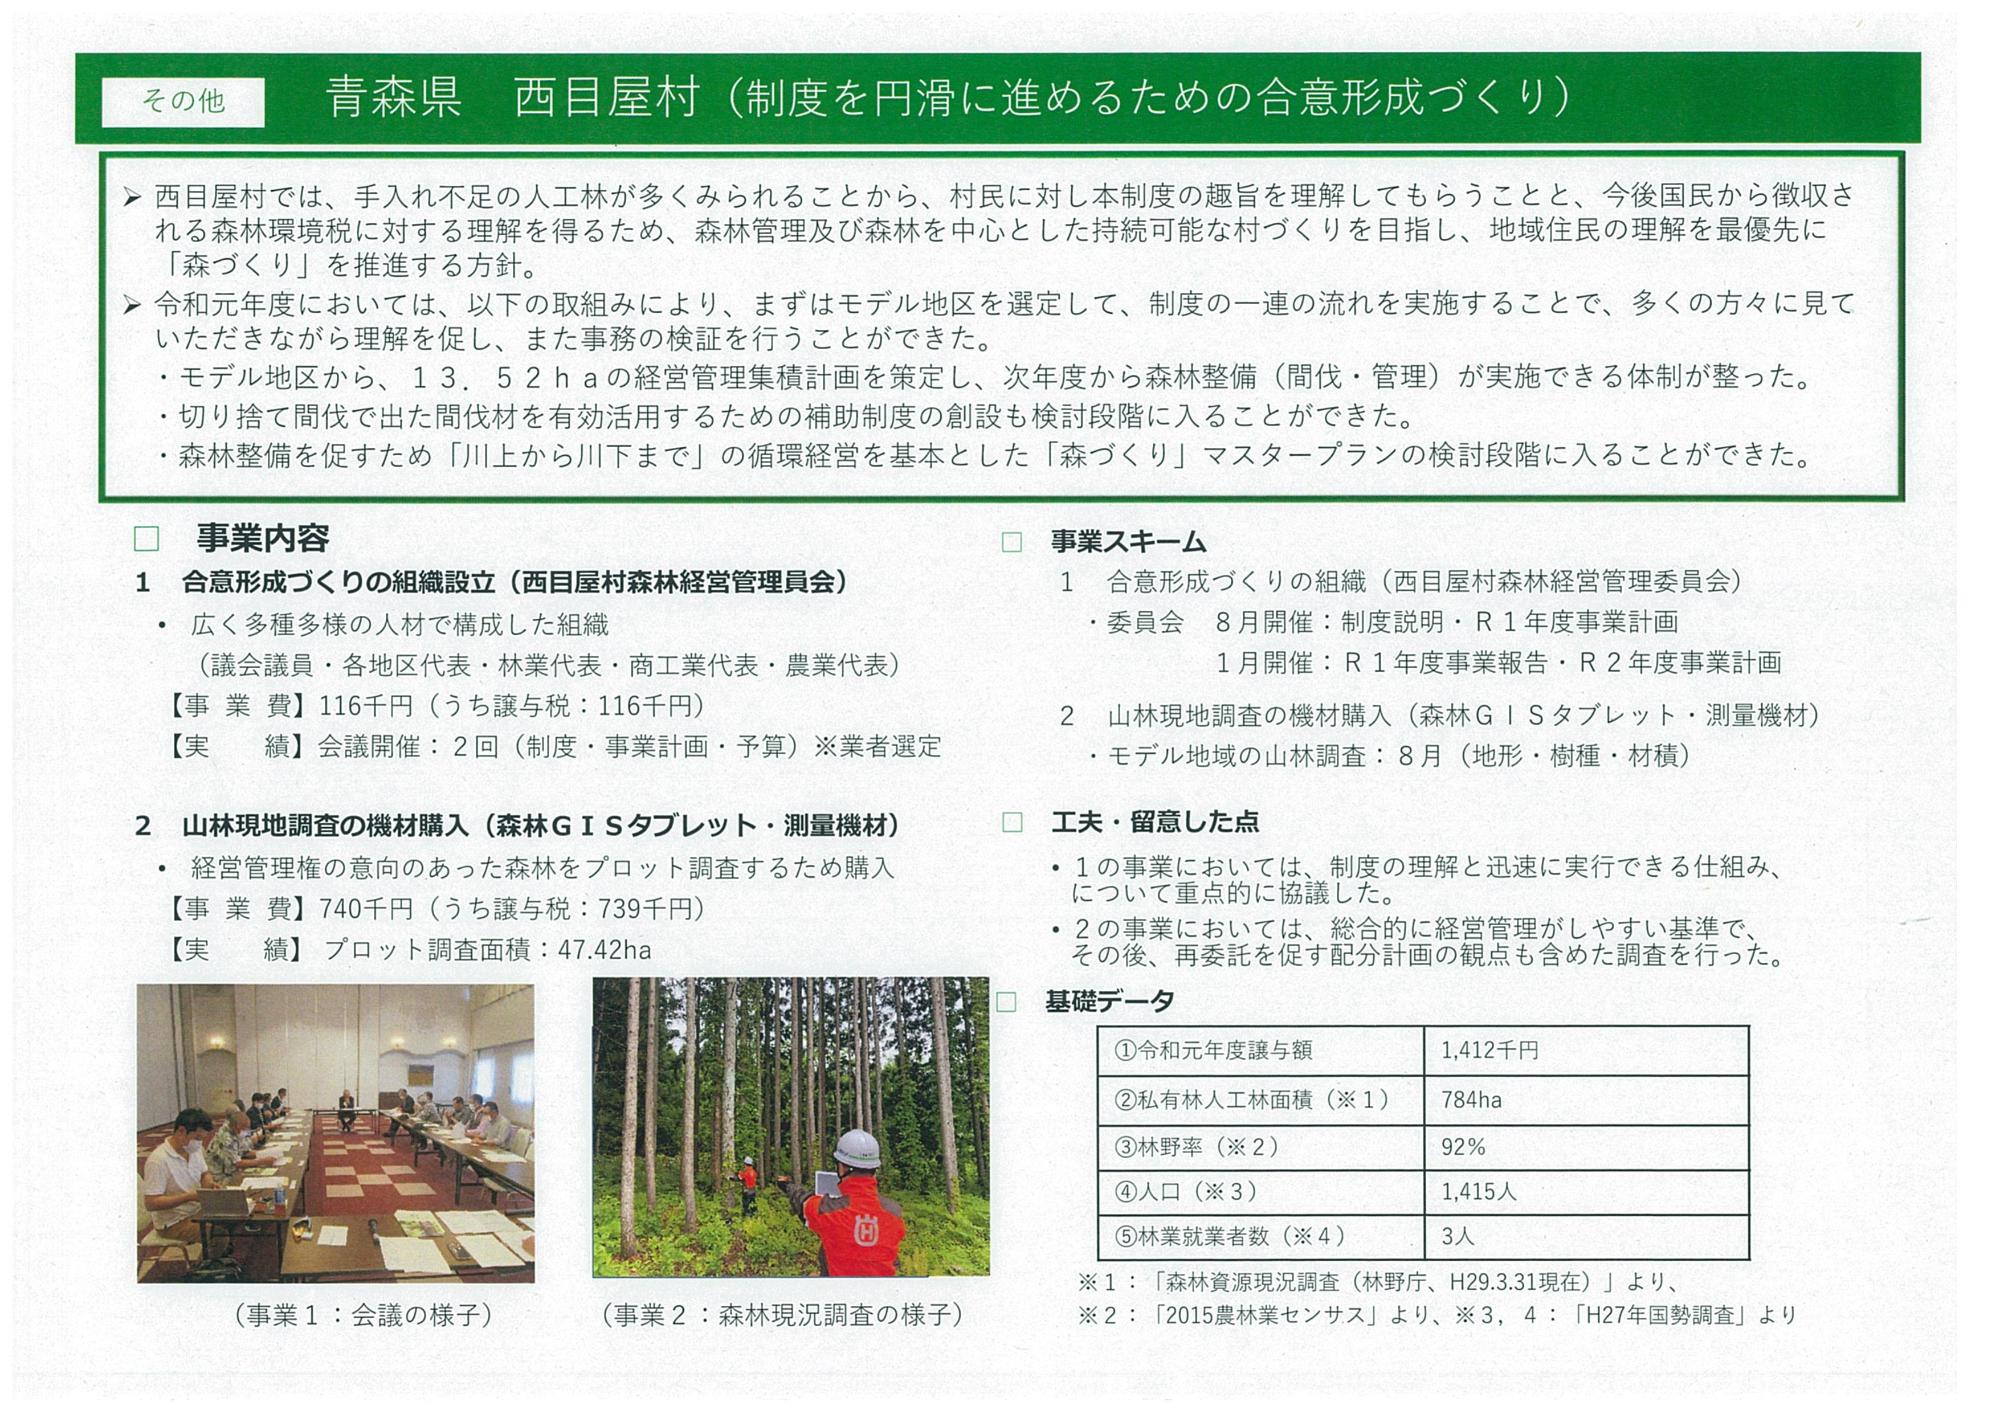 西目屋村の森林経営管理制度について書かれた資料